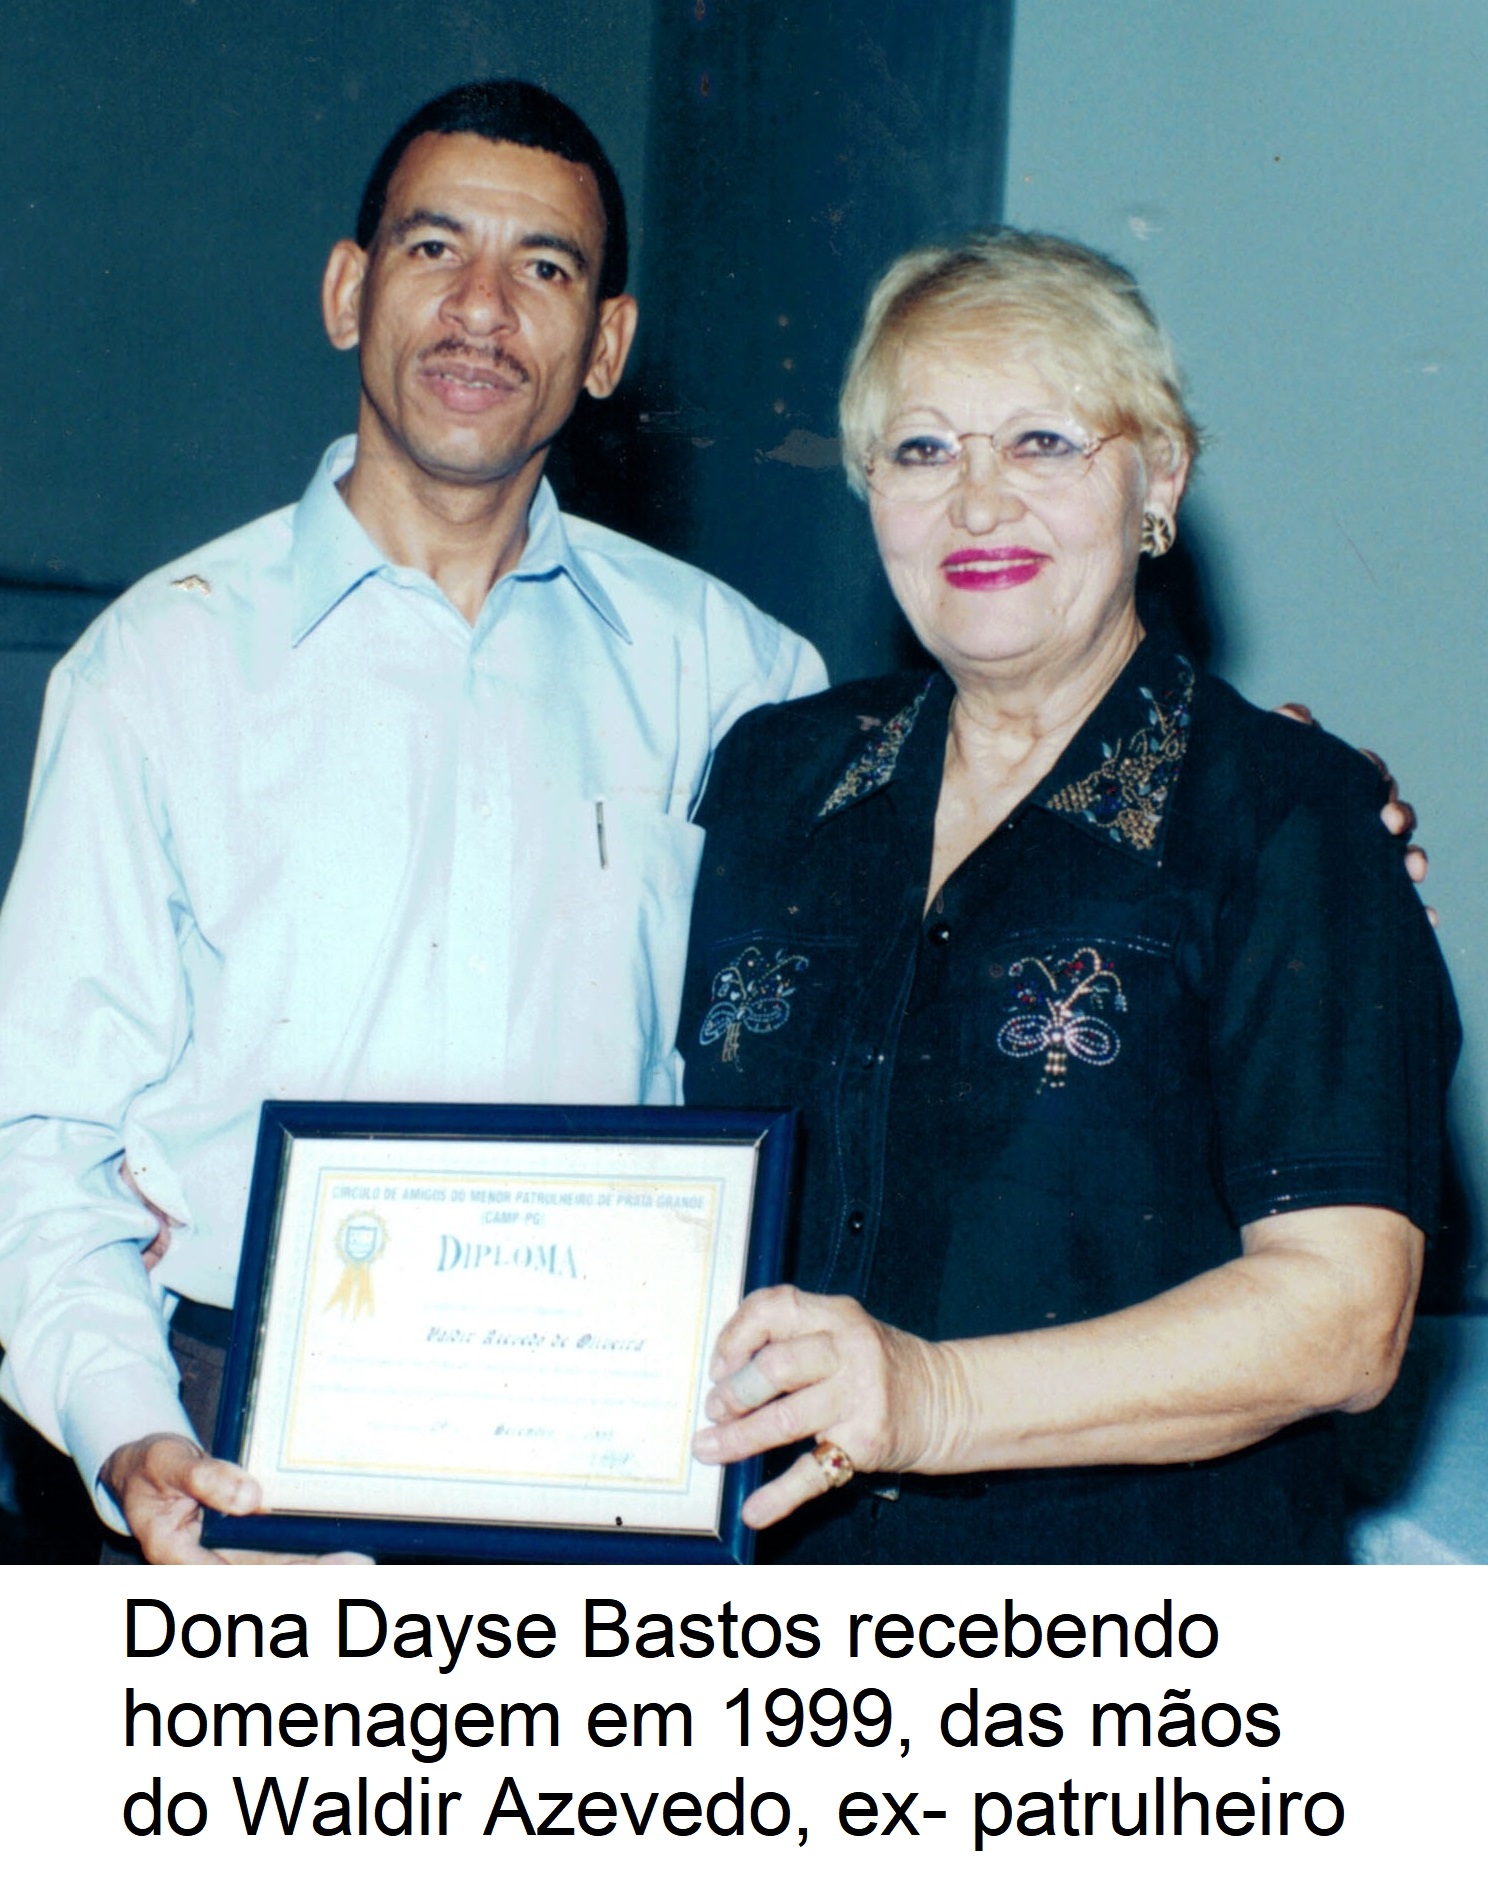 Dayse Bastos recebendo homenagem